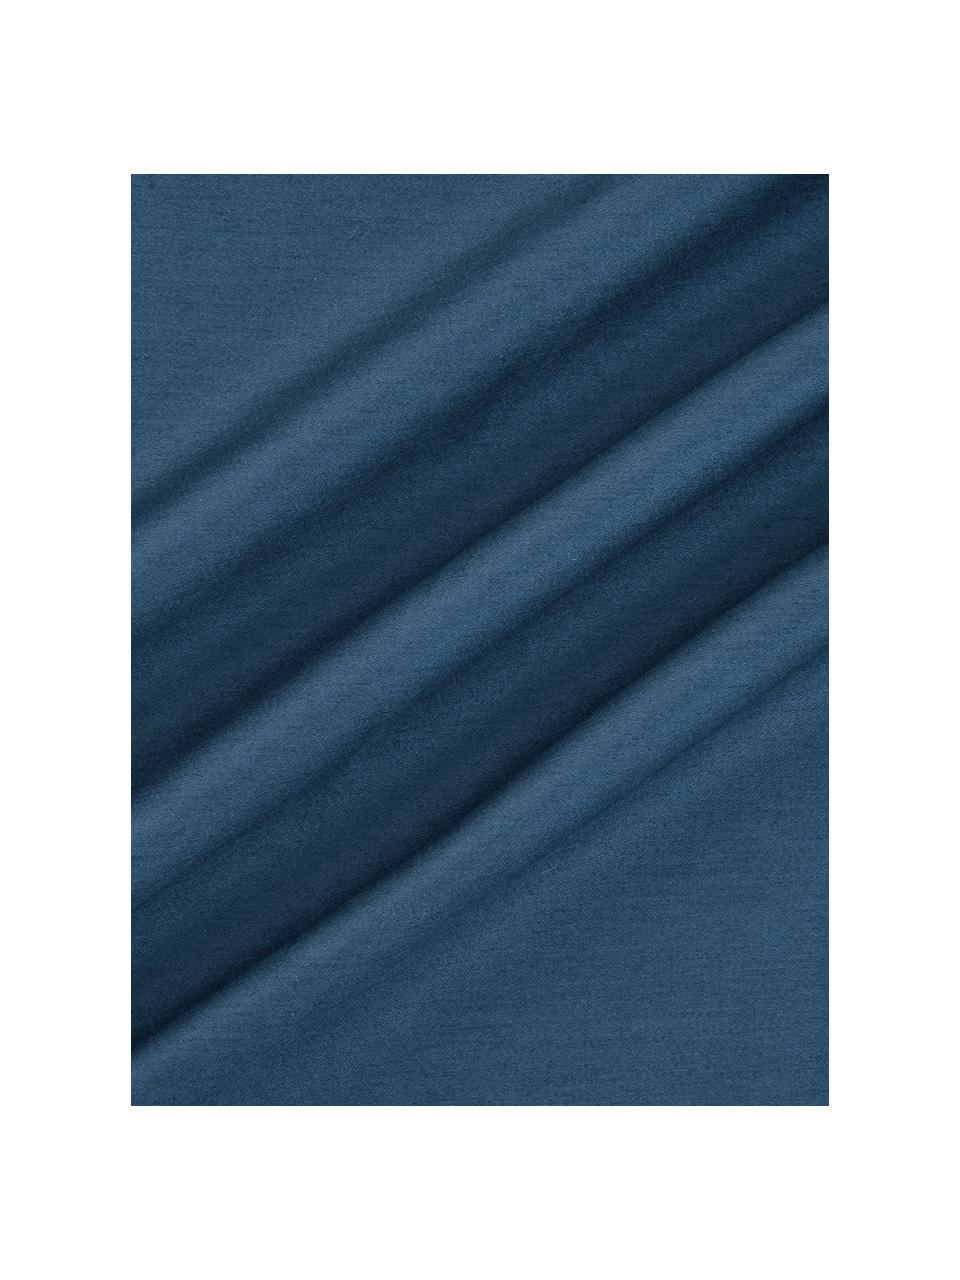 Poszewka na poduszkę z satyny bawełnianej Yuma, 2 szt., Niebieski, biały, szary, S 40 x D 80 cm